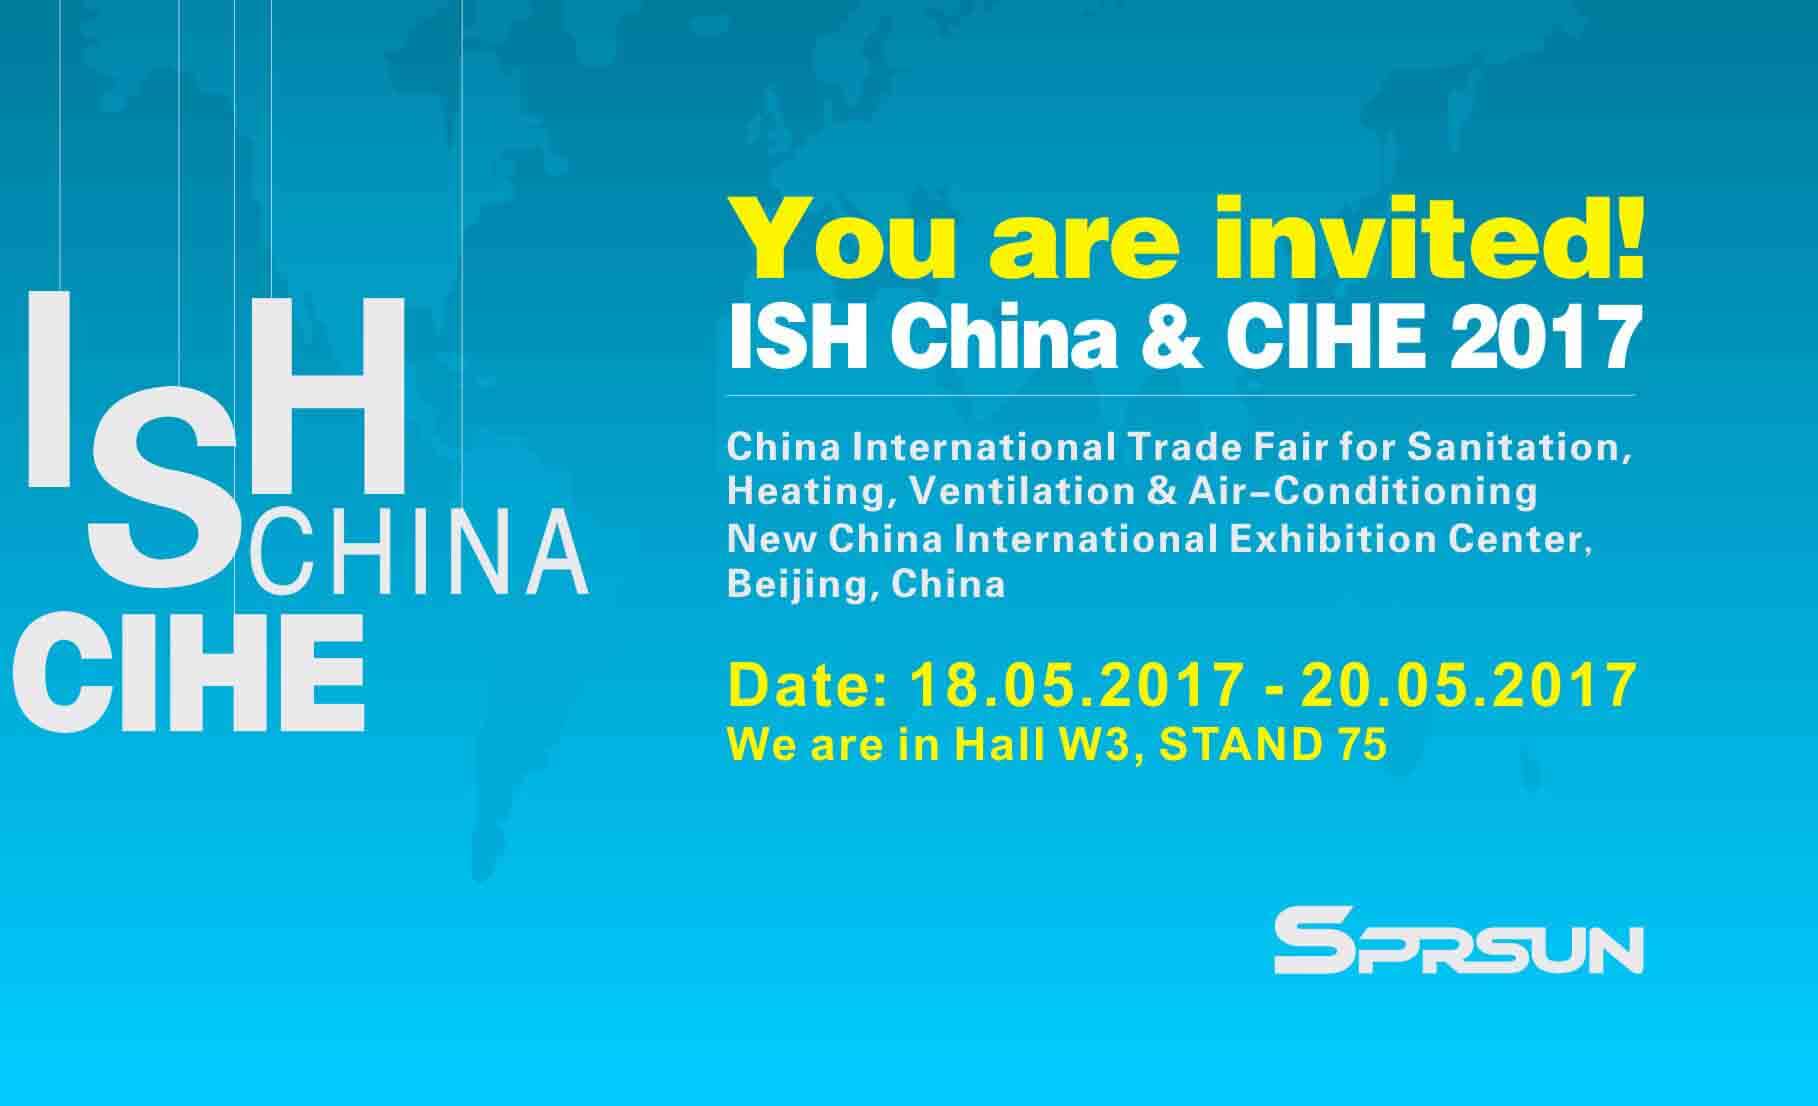 Internationale Handelsmesse in China findet vom 18. bis 20. Mai statt